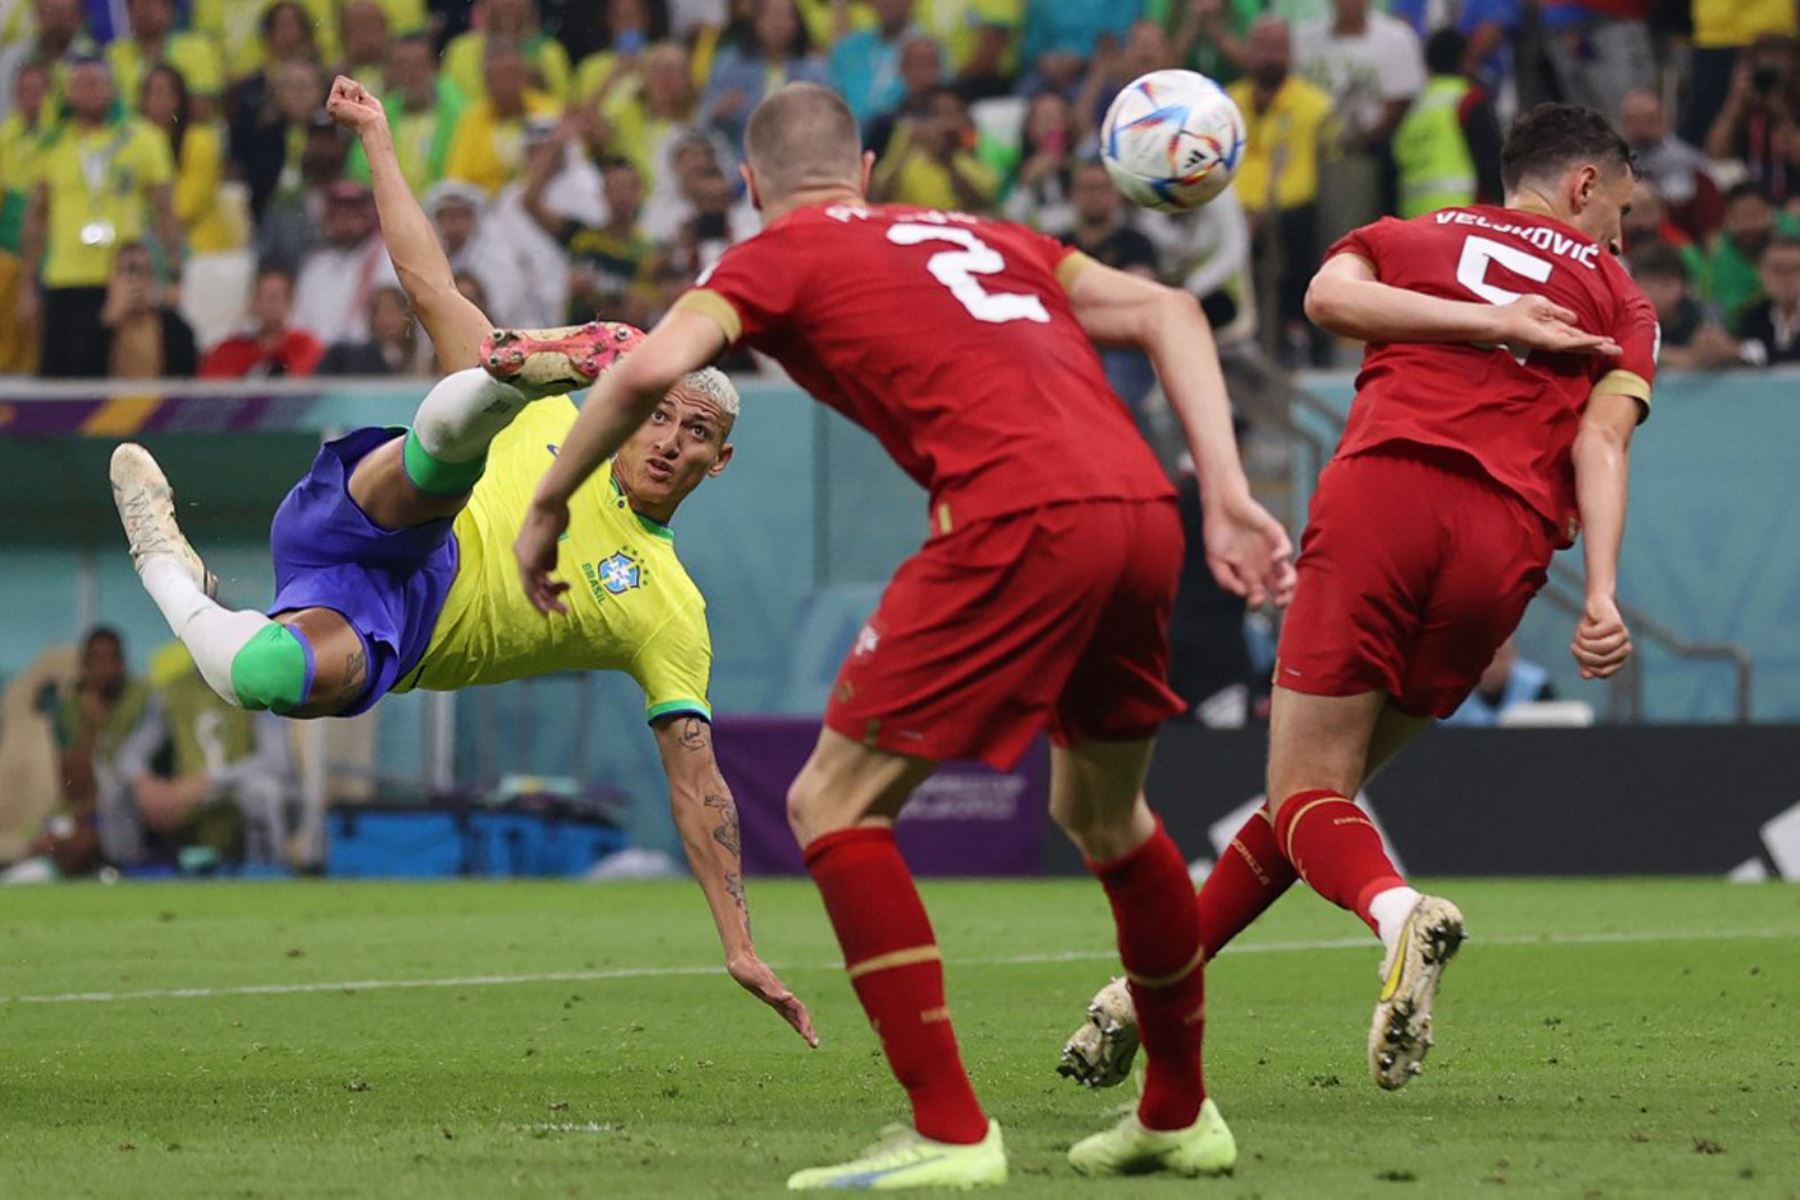 El delantero brasileño Richarlison (L) anota el segundo gol de su equipo durante el partido de fútbol del Grupo G de la Copa Mundial Catar 2022 entre Brasil y Serbia en el Estadio Lusail en Lusail, al norte de Doha.

Foto:AFP